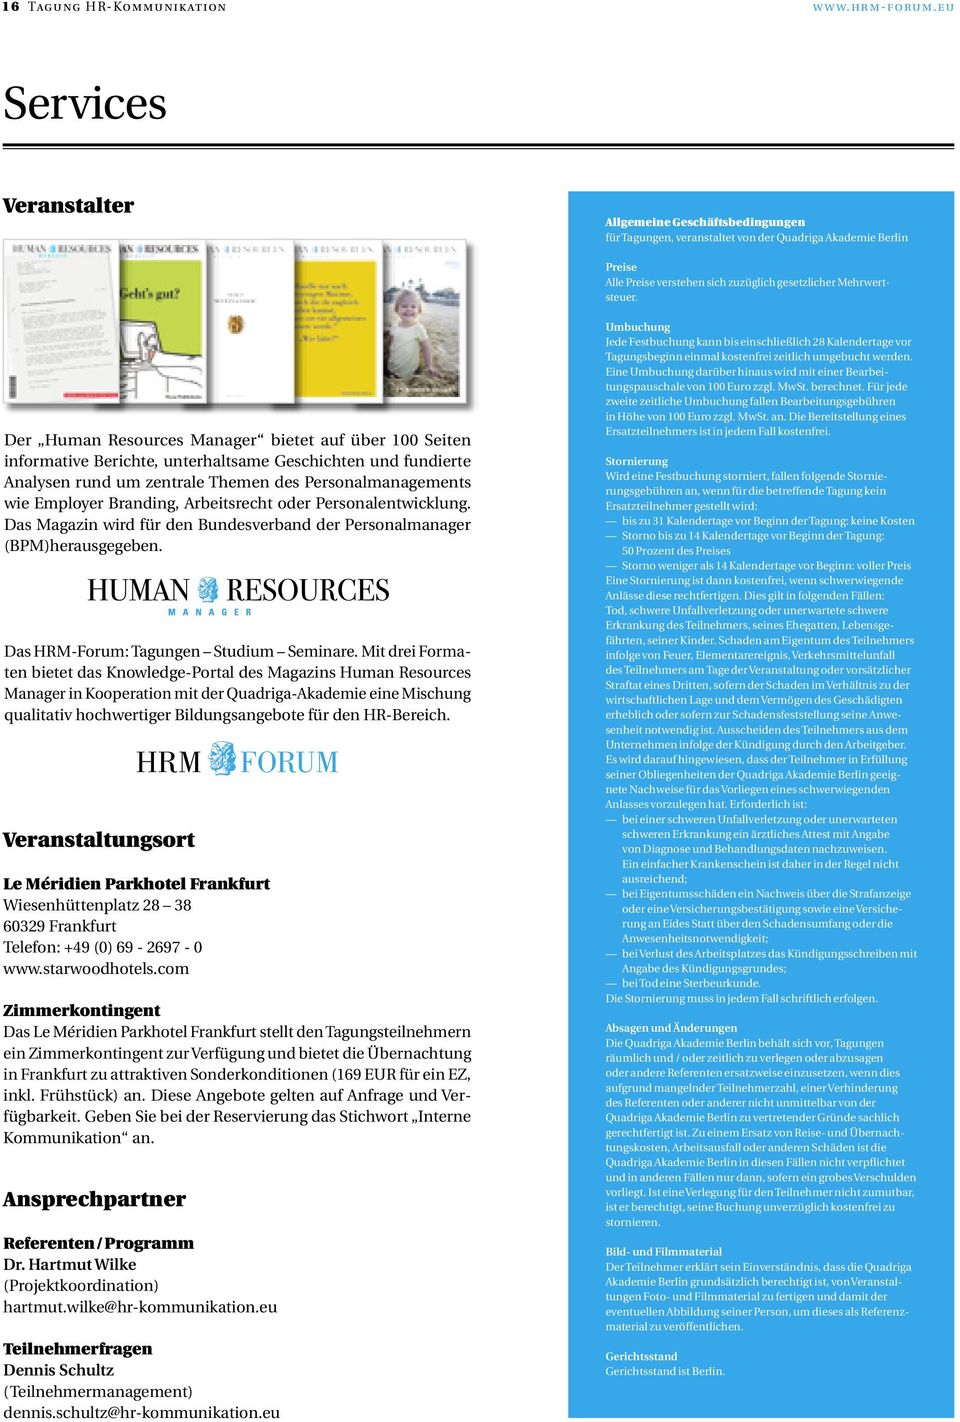 Der Human Resources Manager bietet auf über 100 Seiten informative Berichte, unterhaltsame Geschichten und fundierte Analysen rund um zentrale Themen des Personalmanagements wie Employer Branding,